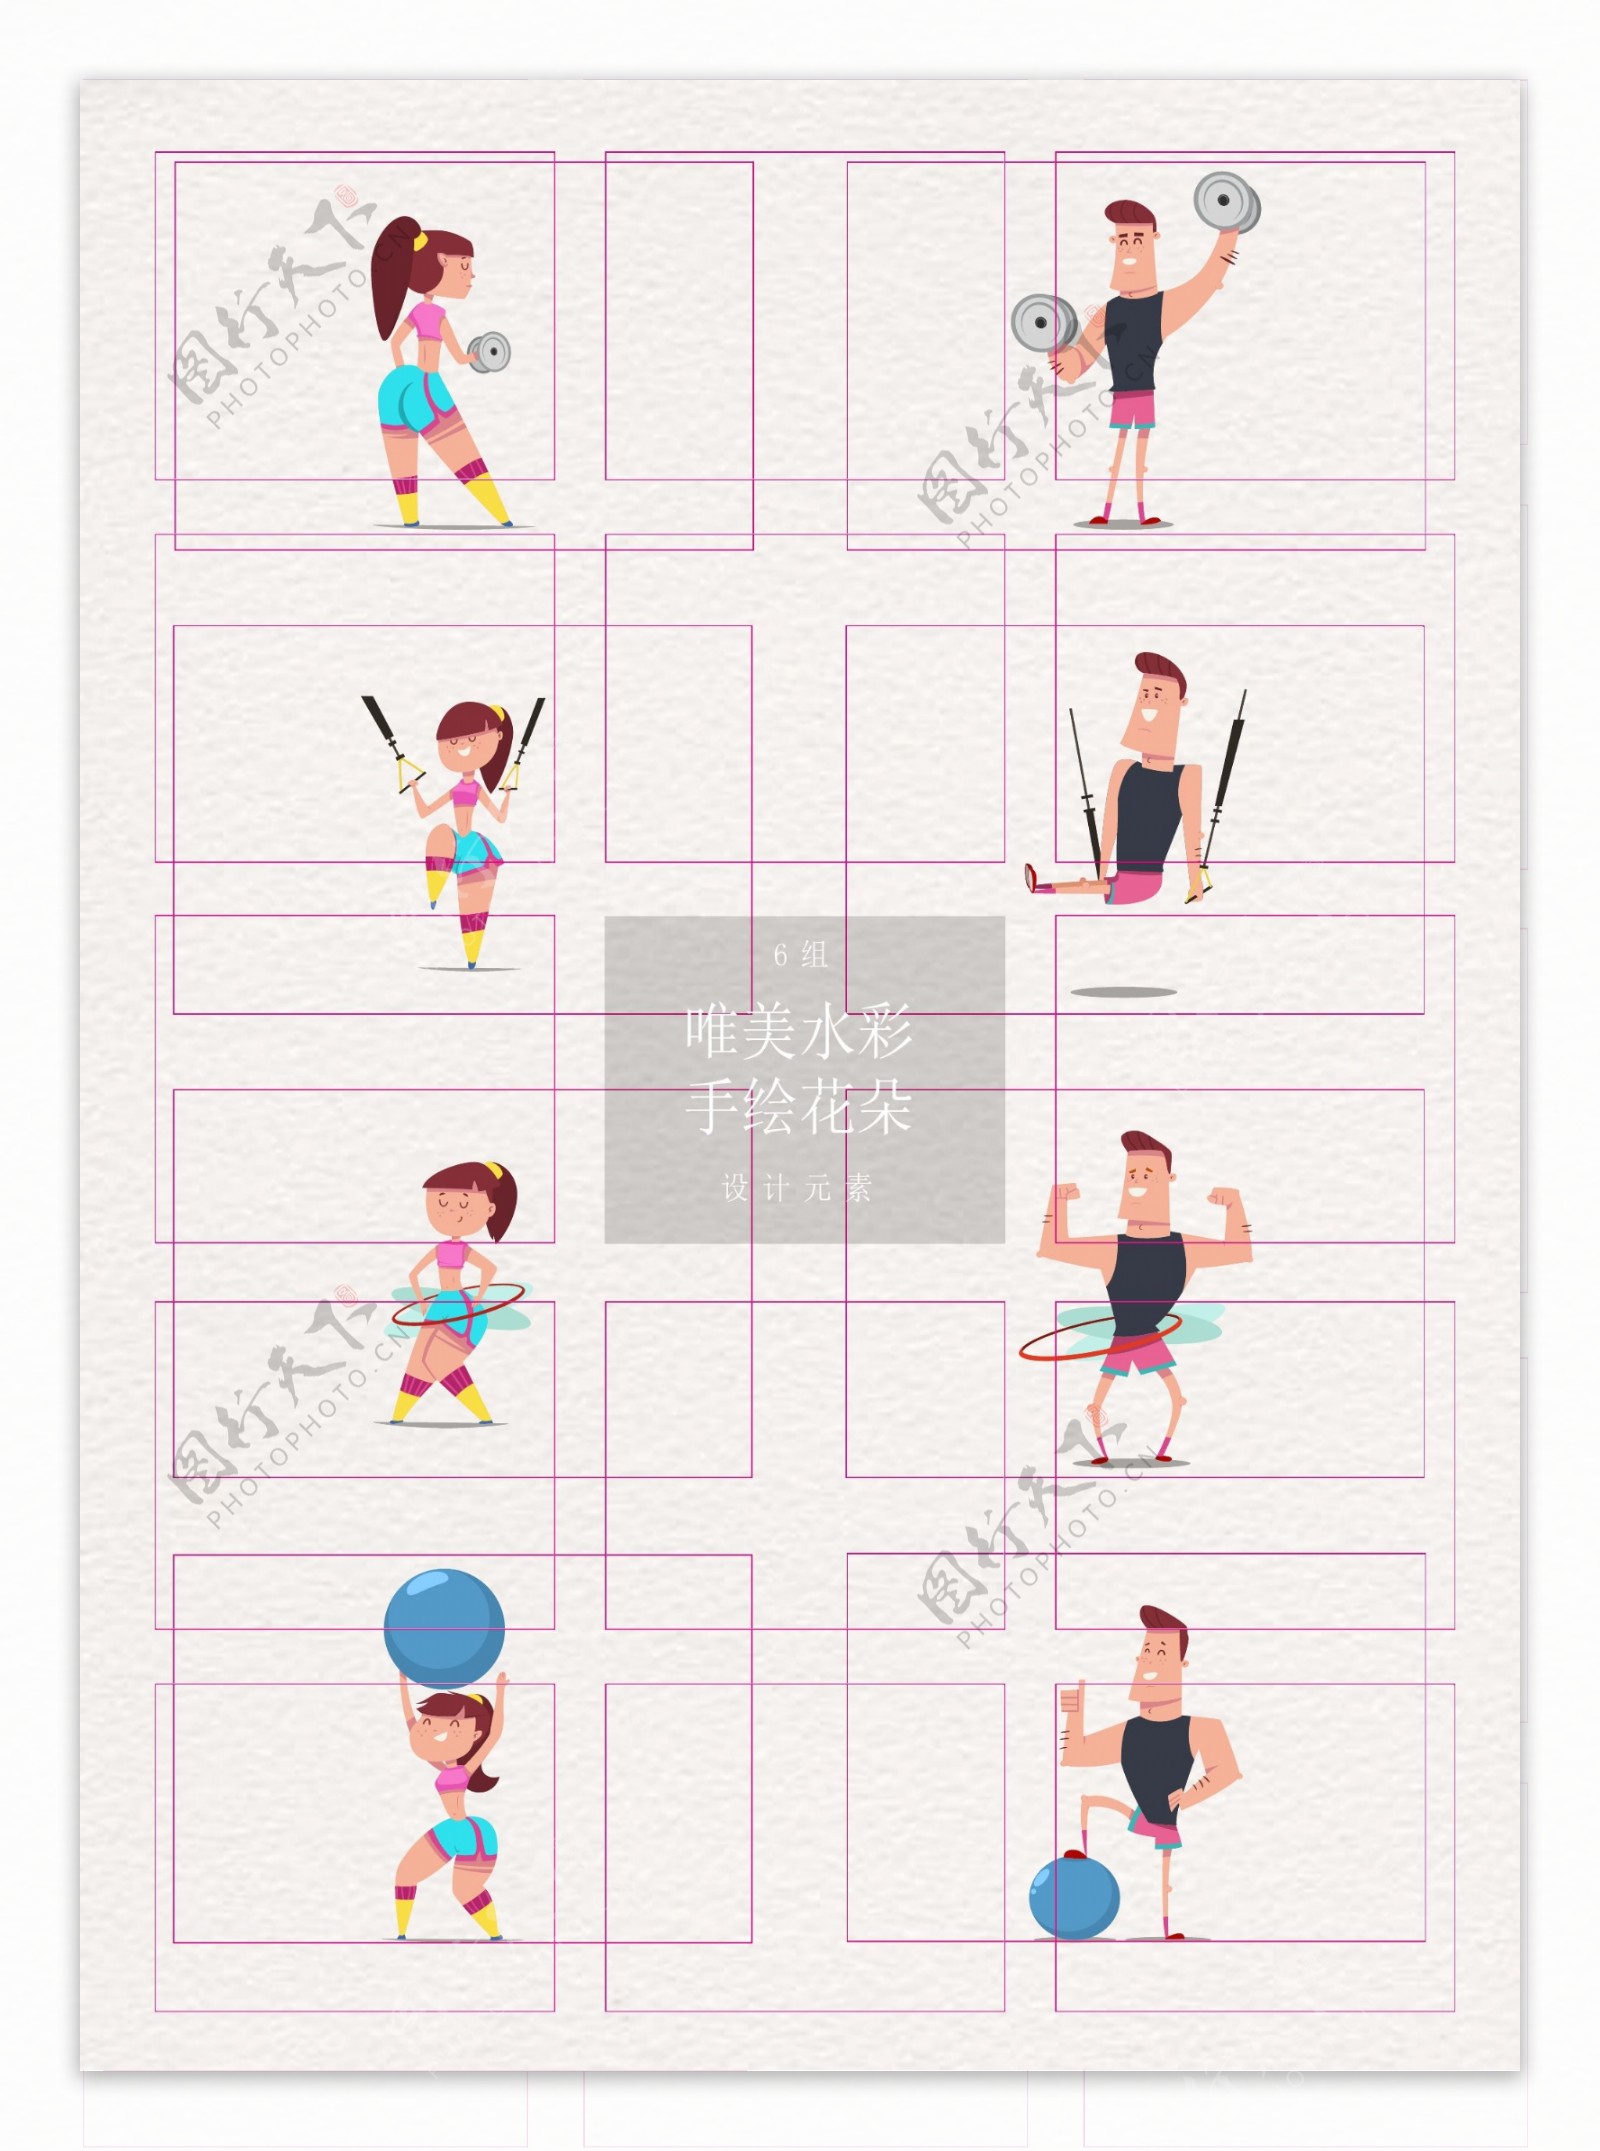 彩色卡通8组运动健身男女人物设计